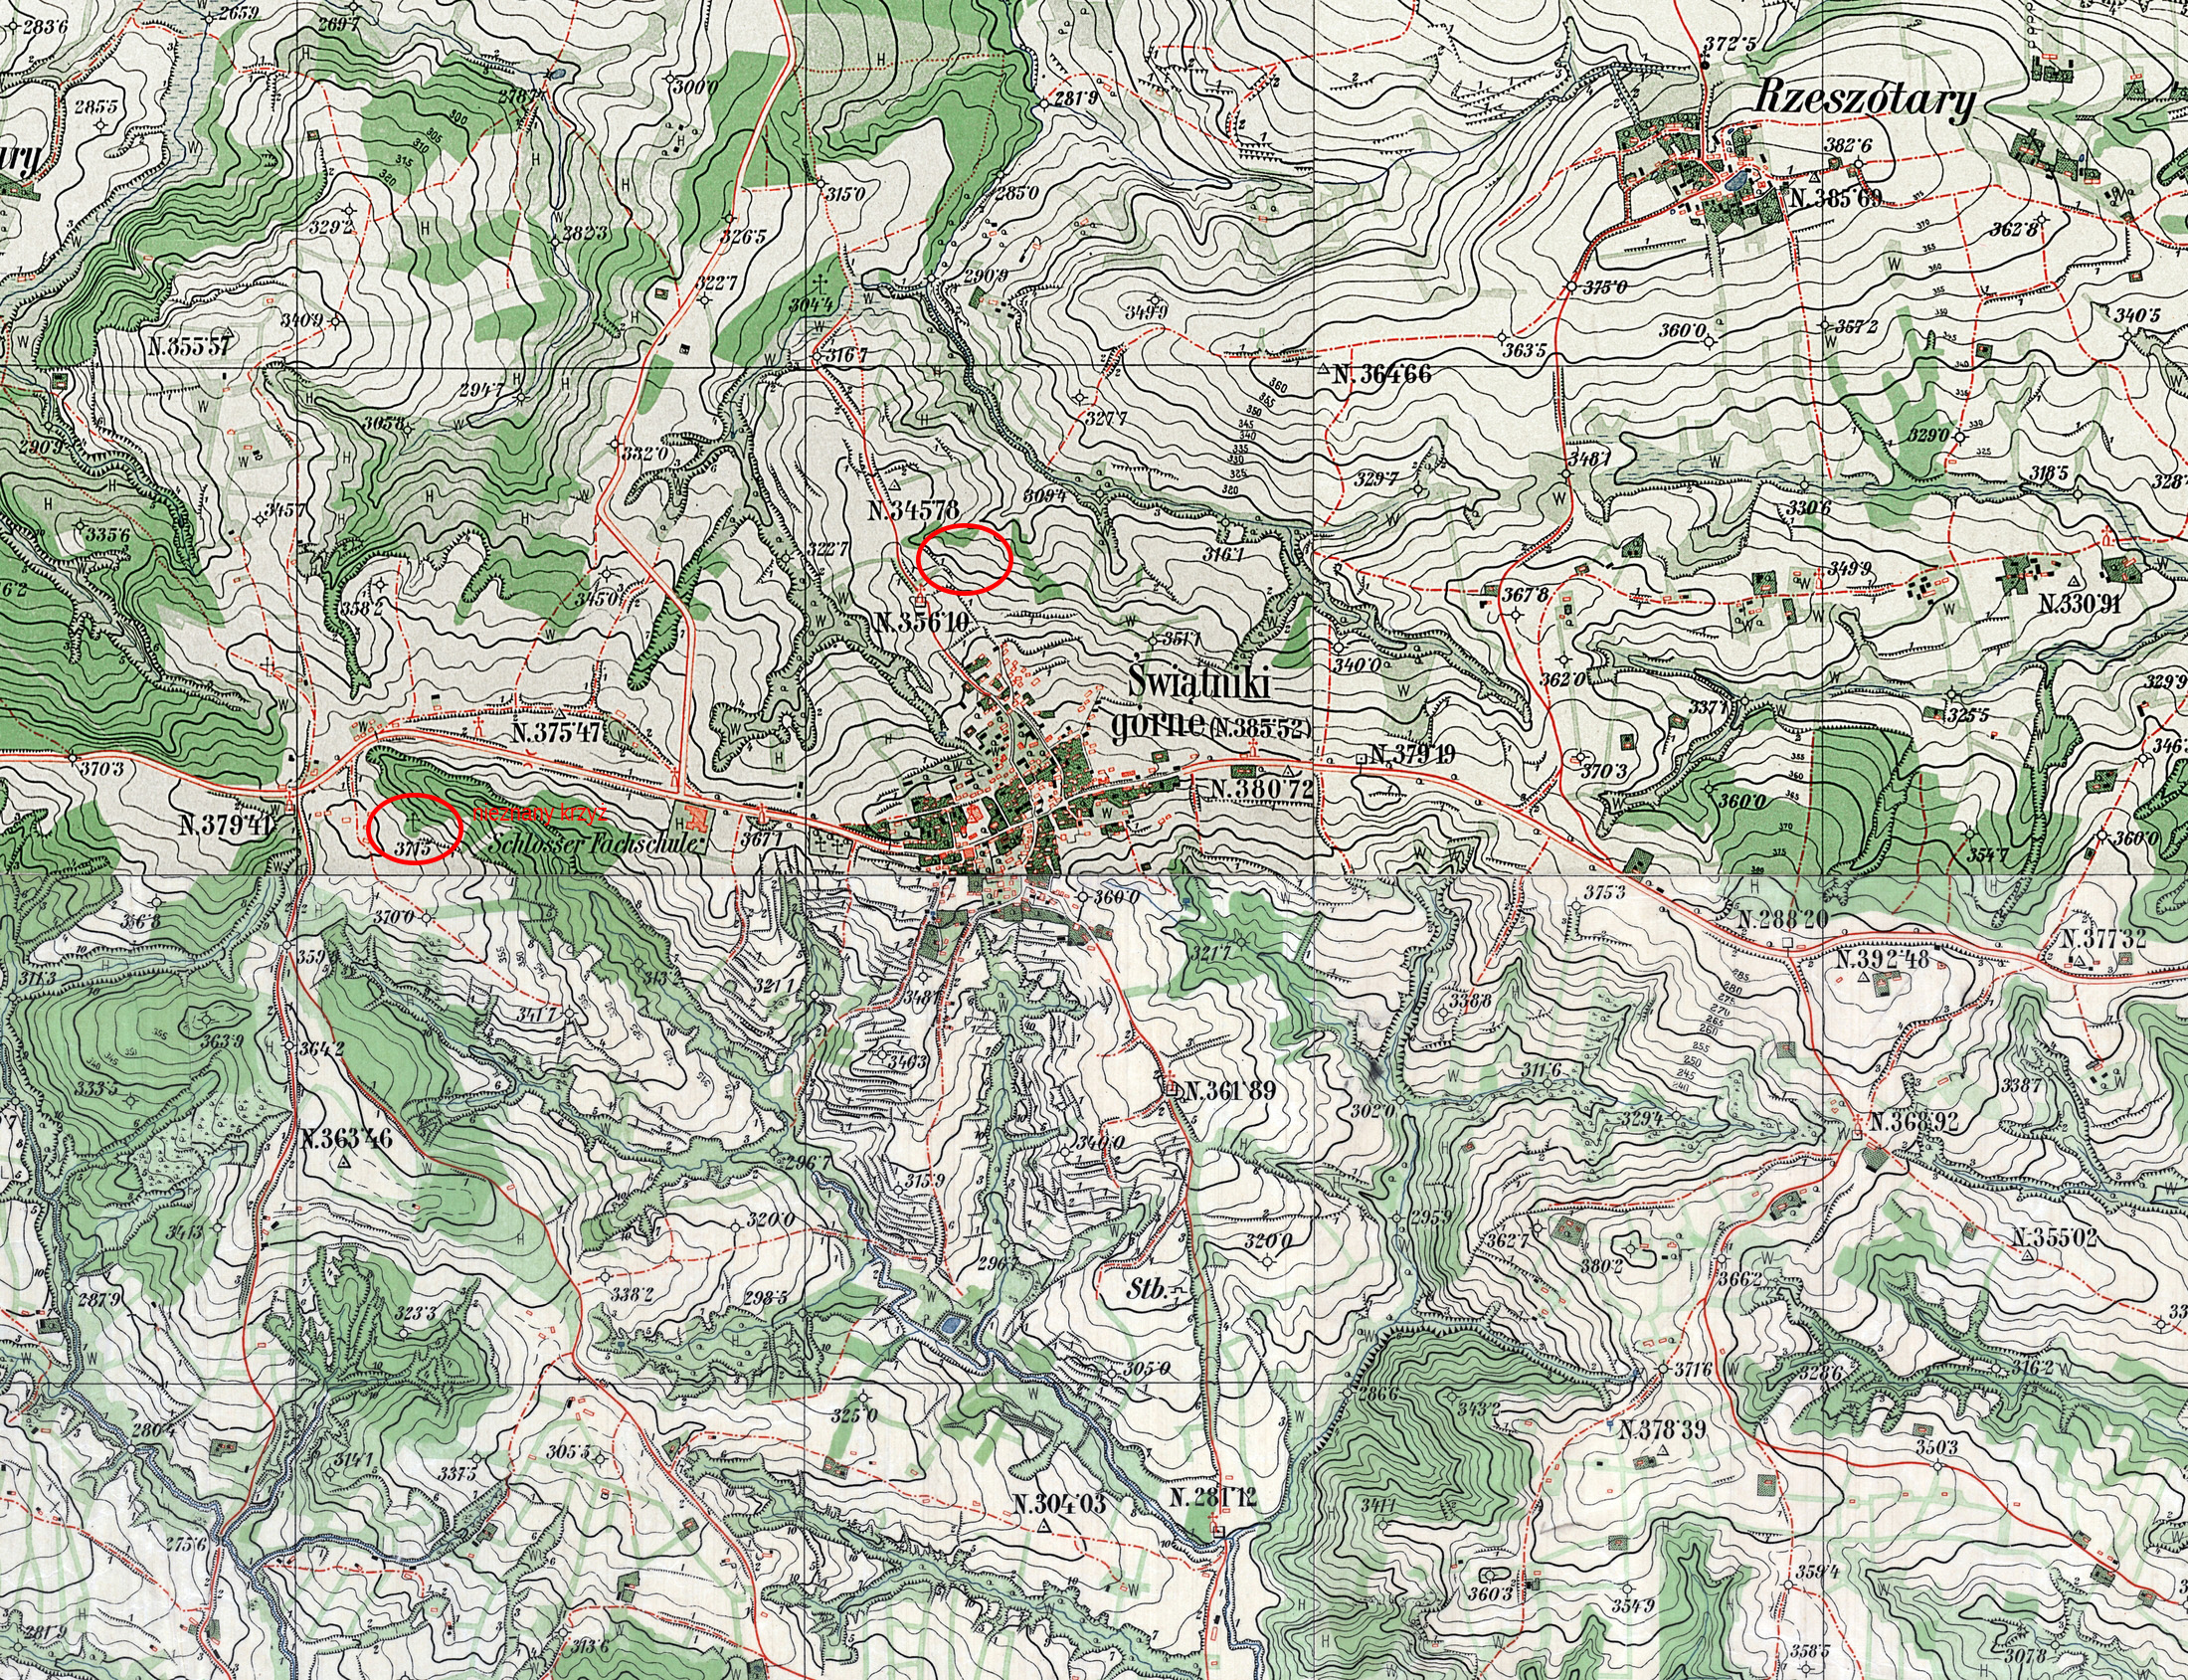 Ryc. 11 Mapa Twierdzy Kraków z 1900 roku z zaznaczonymi lokalizacjami cmentarzy epidemicznych.